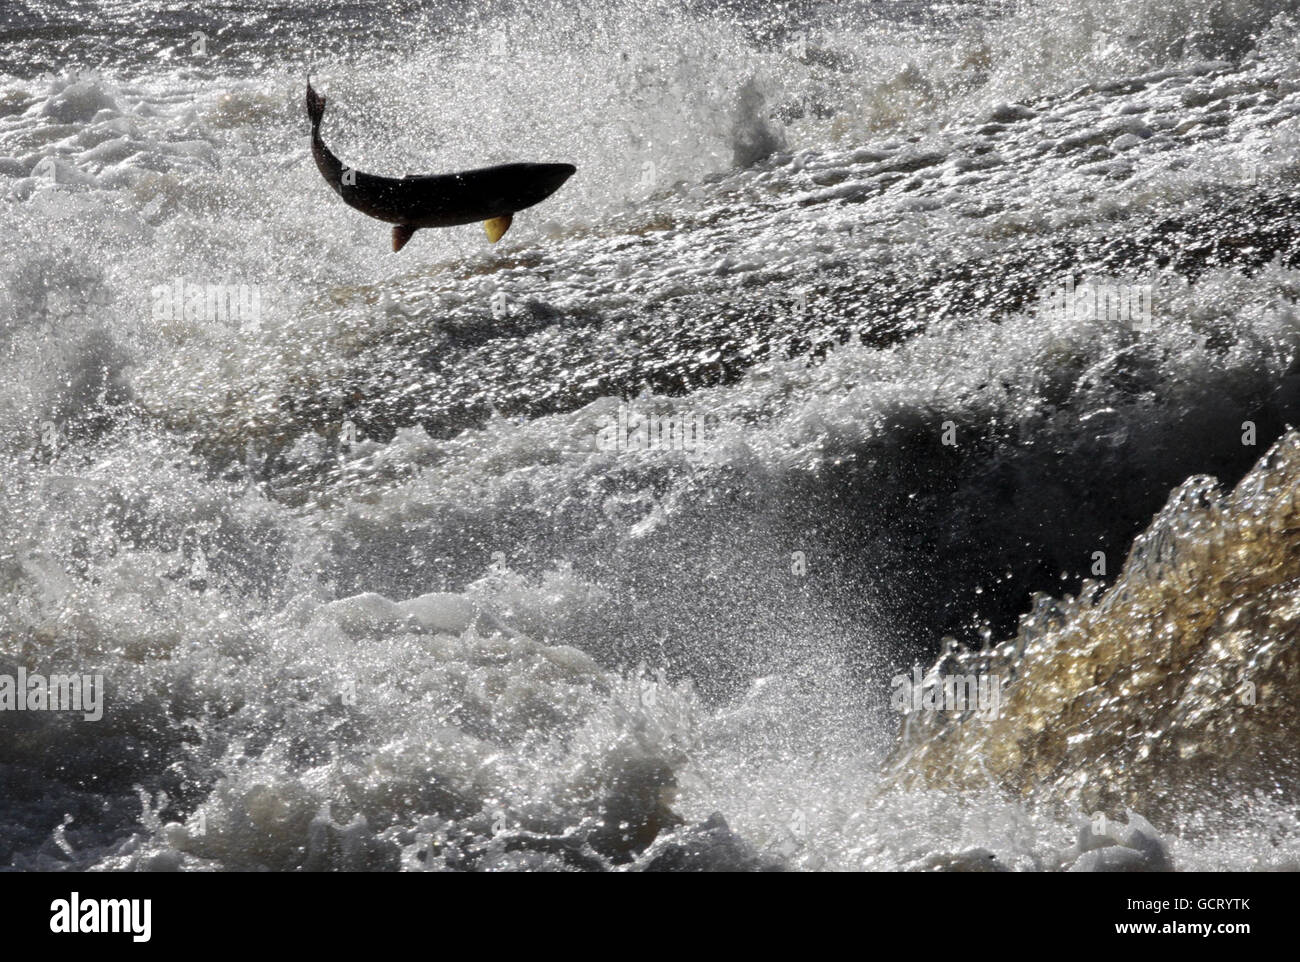 El salmón migratorio, de hasta 10 kg de peso, saltará la Selkirk Cauld en el río Ettrick, en las fronteras escocesas después de viajar desde la costa del Mar del Norte. Foto de stock